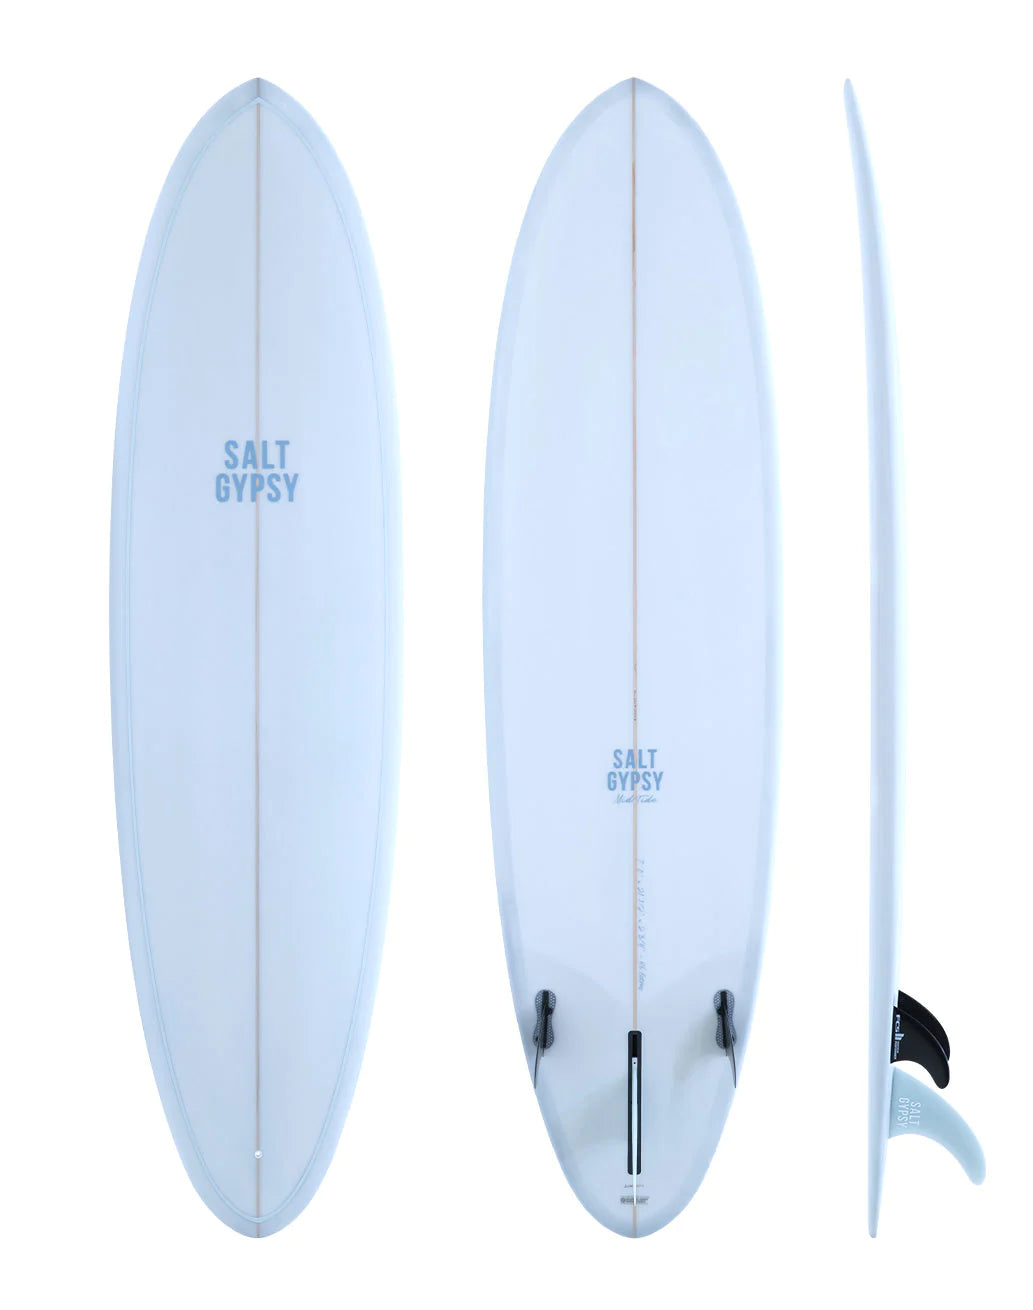 SALT GYPSY MID TIDE 7'0" SURFBOARD